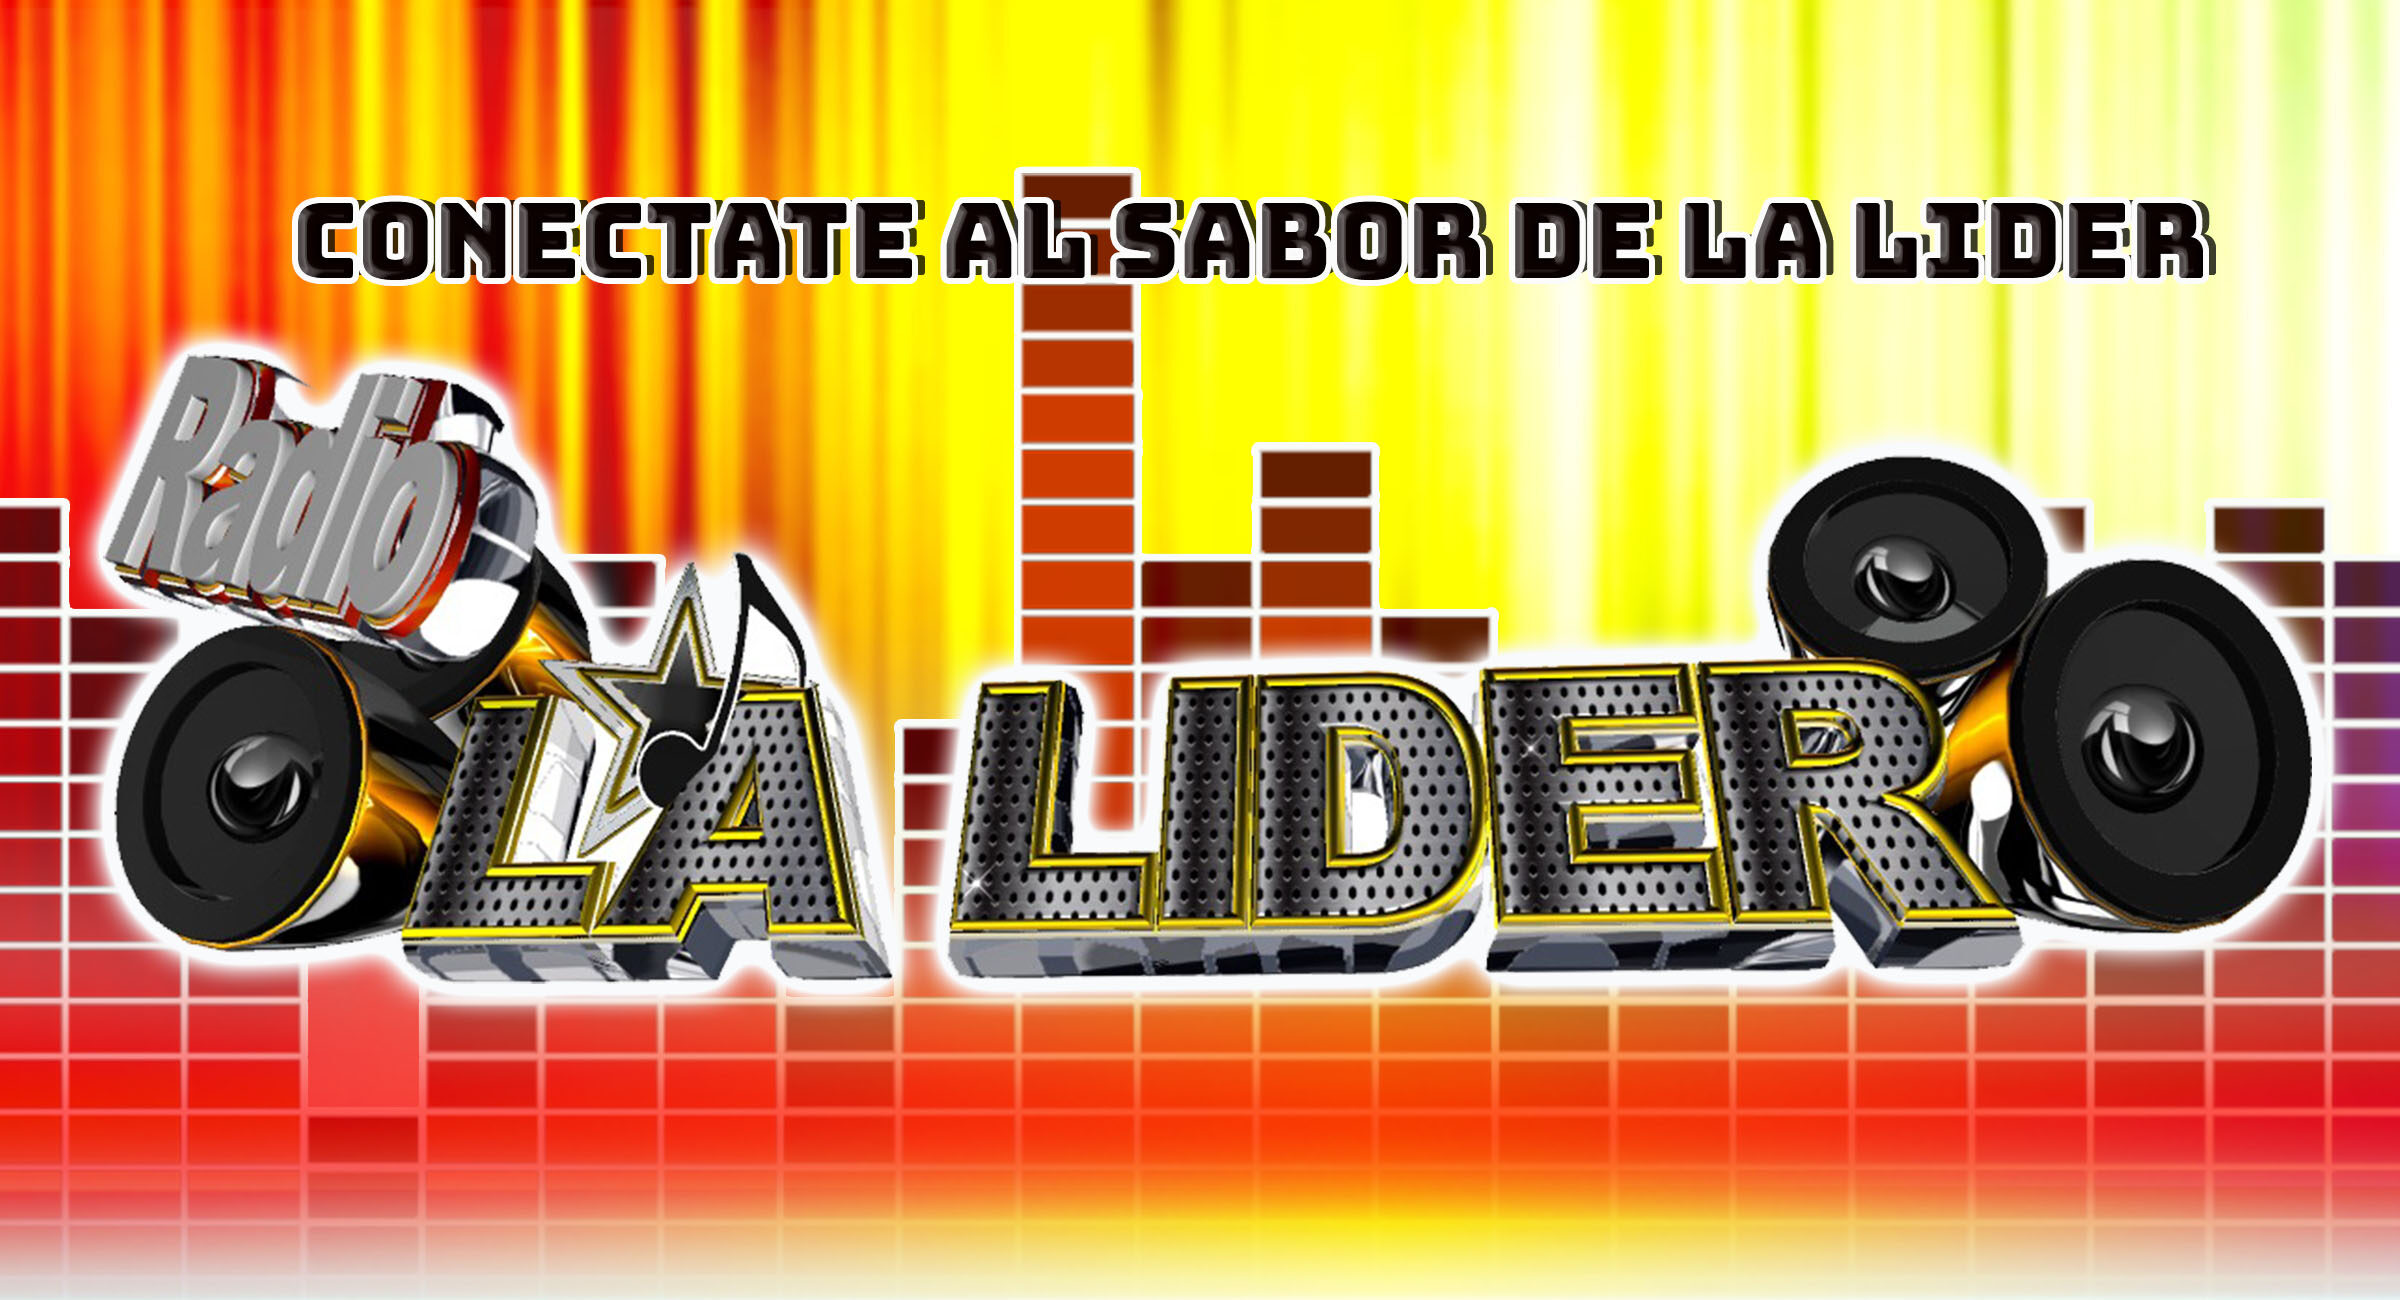 Radio La Lider